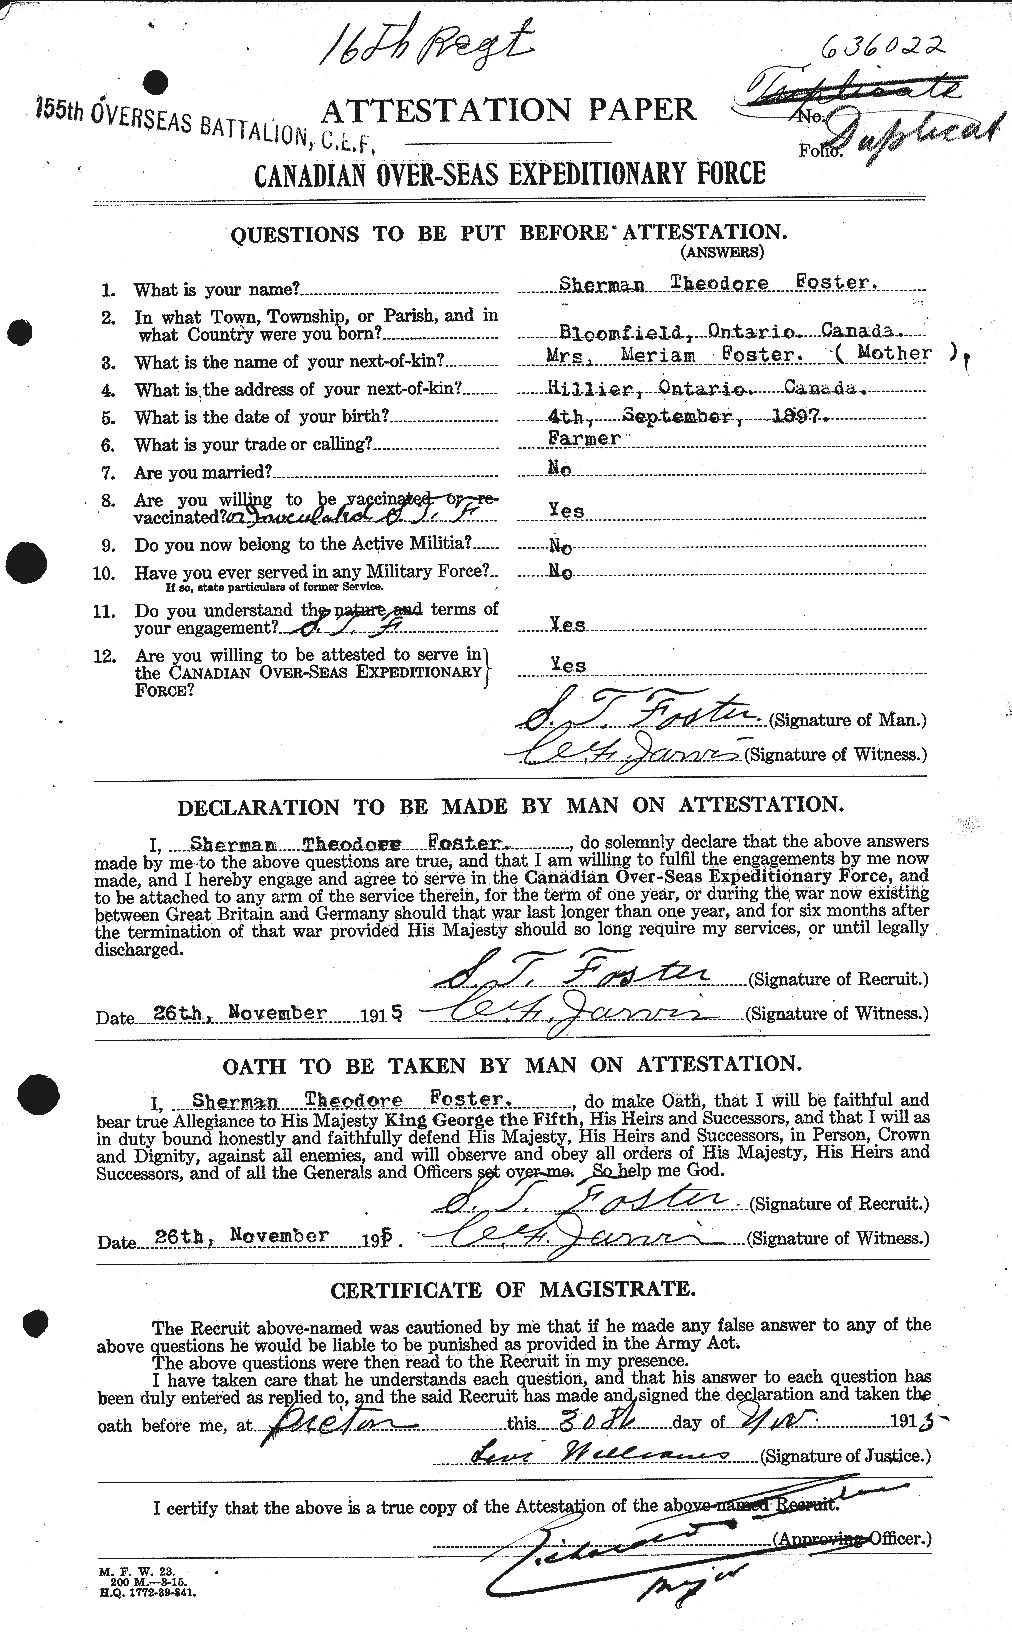 Dossiers du Personnel de la Première Guerre mondiale - CEC 335208a